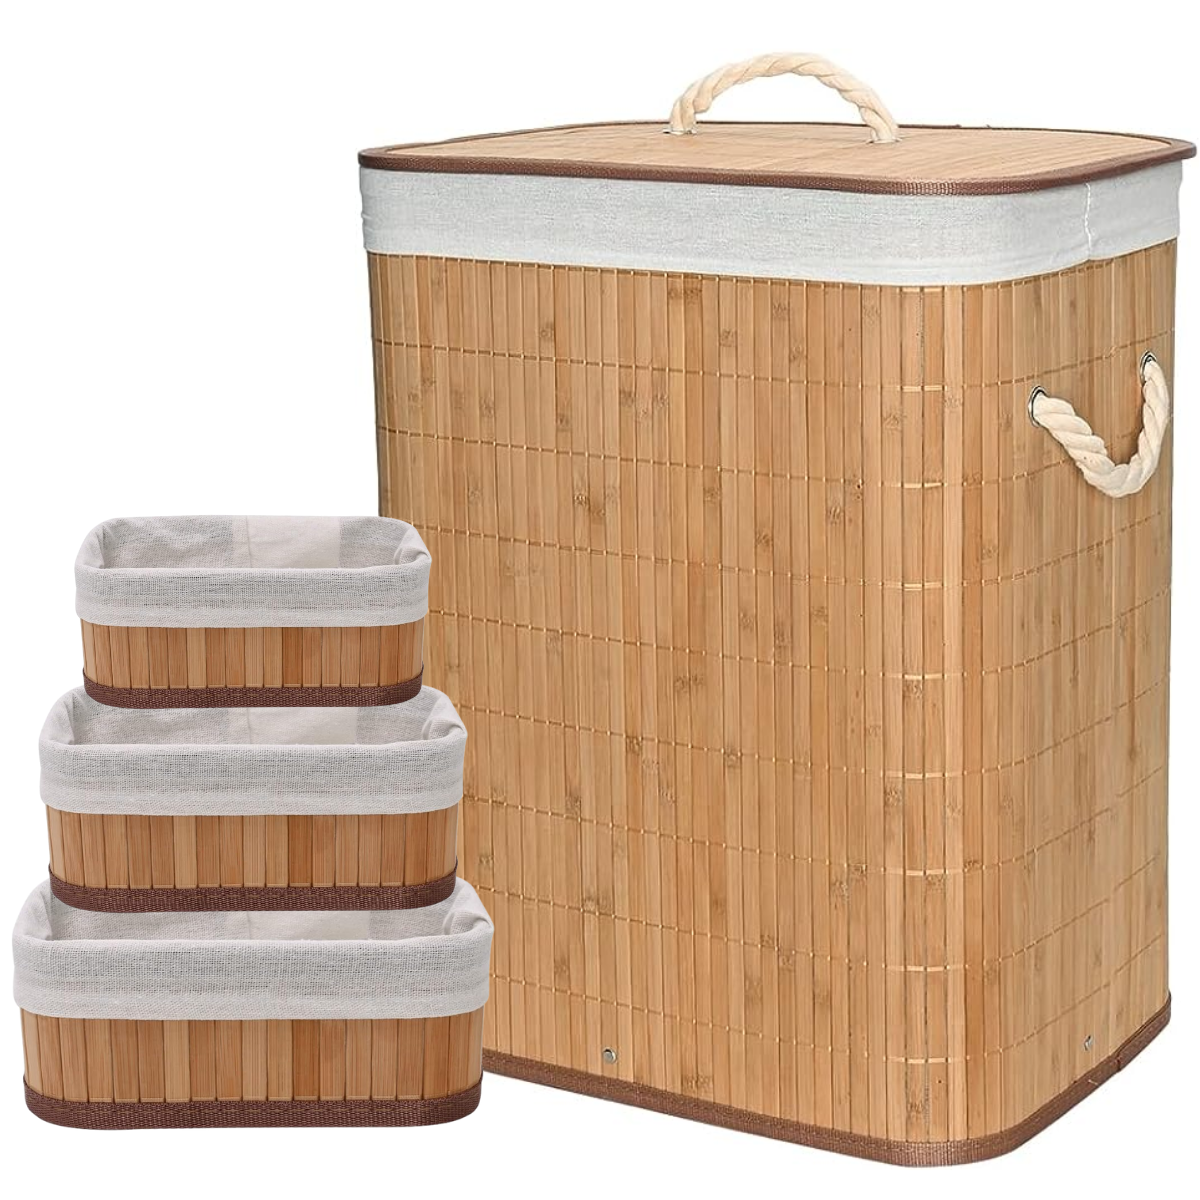 Kit Cestos de Fibra Natural Bambu com Forro Retangular Cesto Forrado Roupa Suja Organização Banheiro